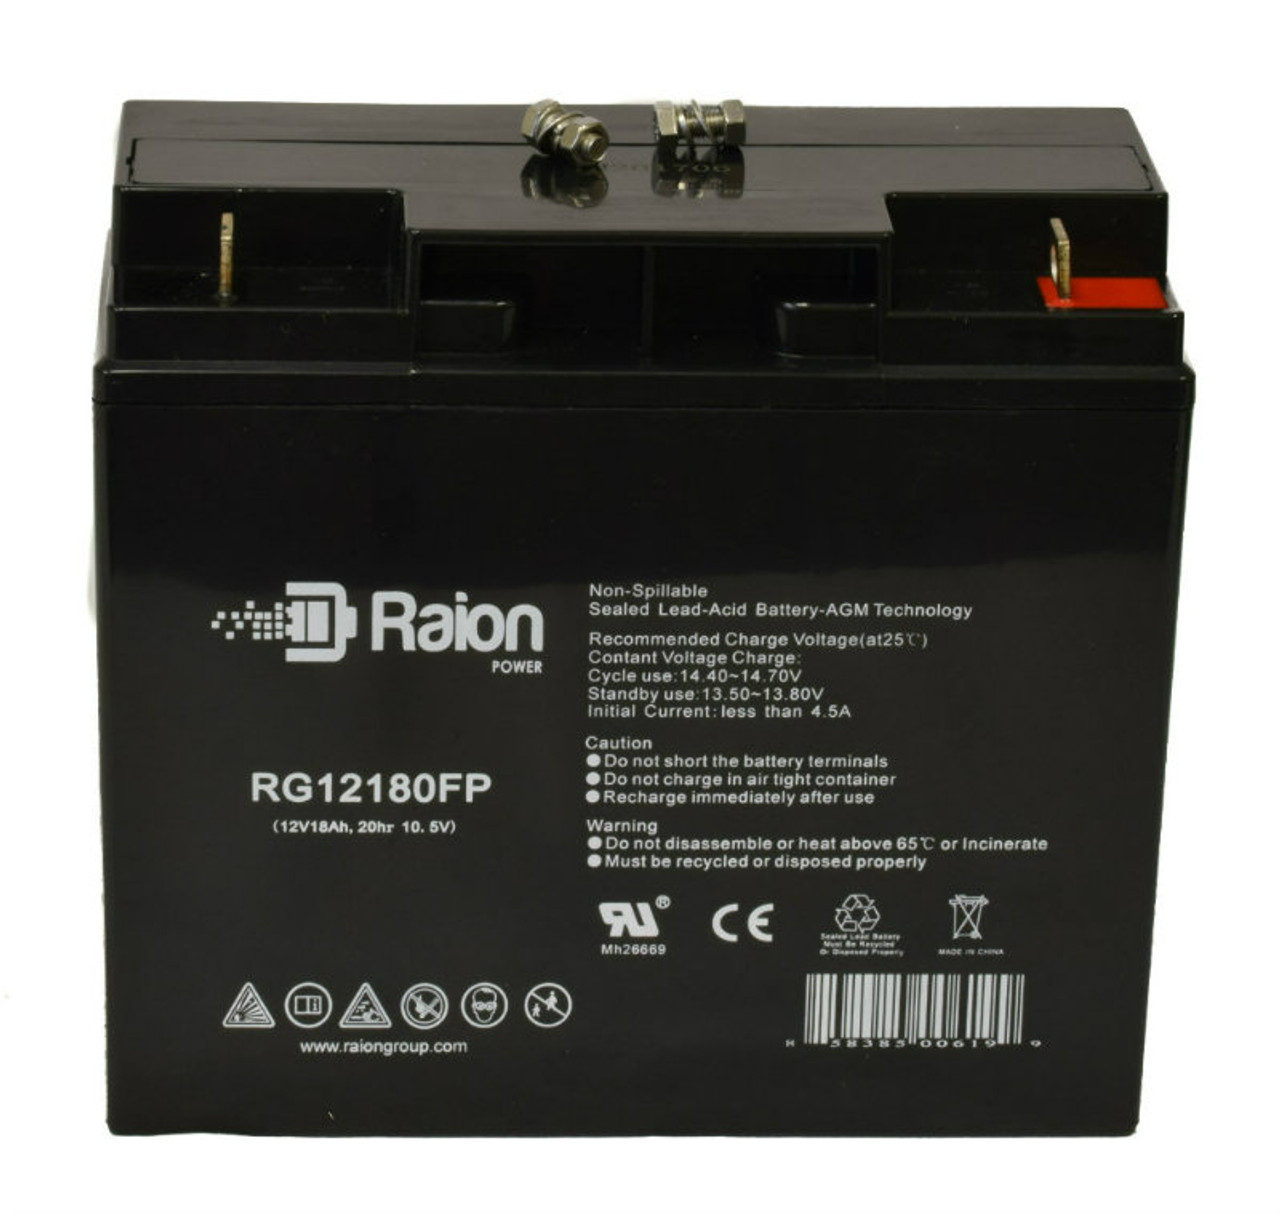 Raion Power RG12180FP 12V 18Ah Lead Acid Battery for Damaco D99